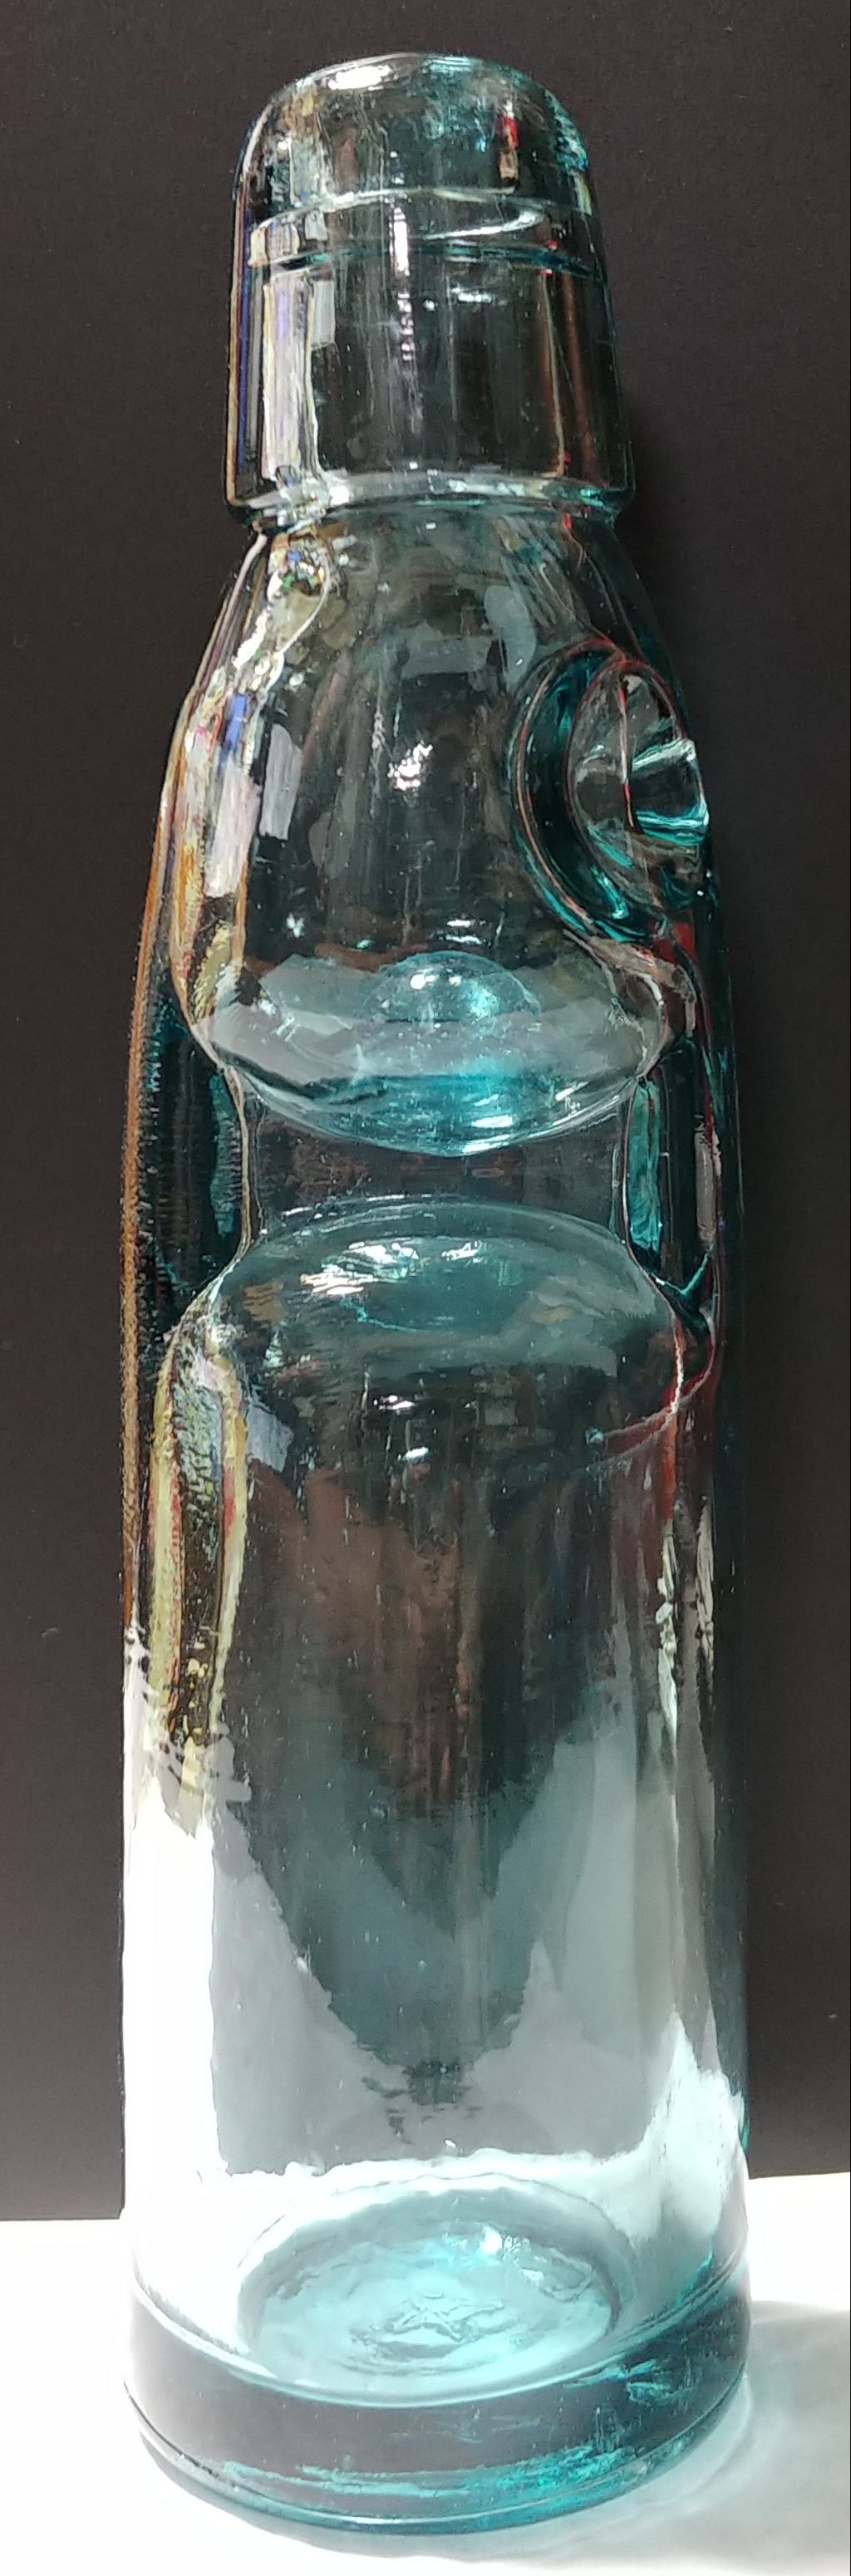 日記 昭和レトロなラムネ瓶を洗浄して色々見てみた ビー玉 ラムネ ビン トレジャーハンティン部 部長のブログ